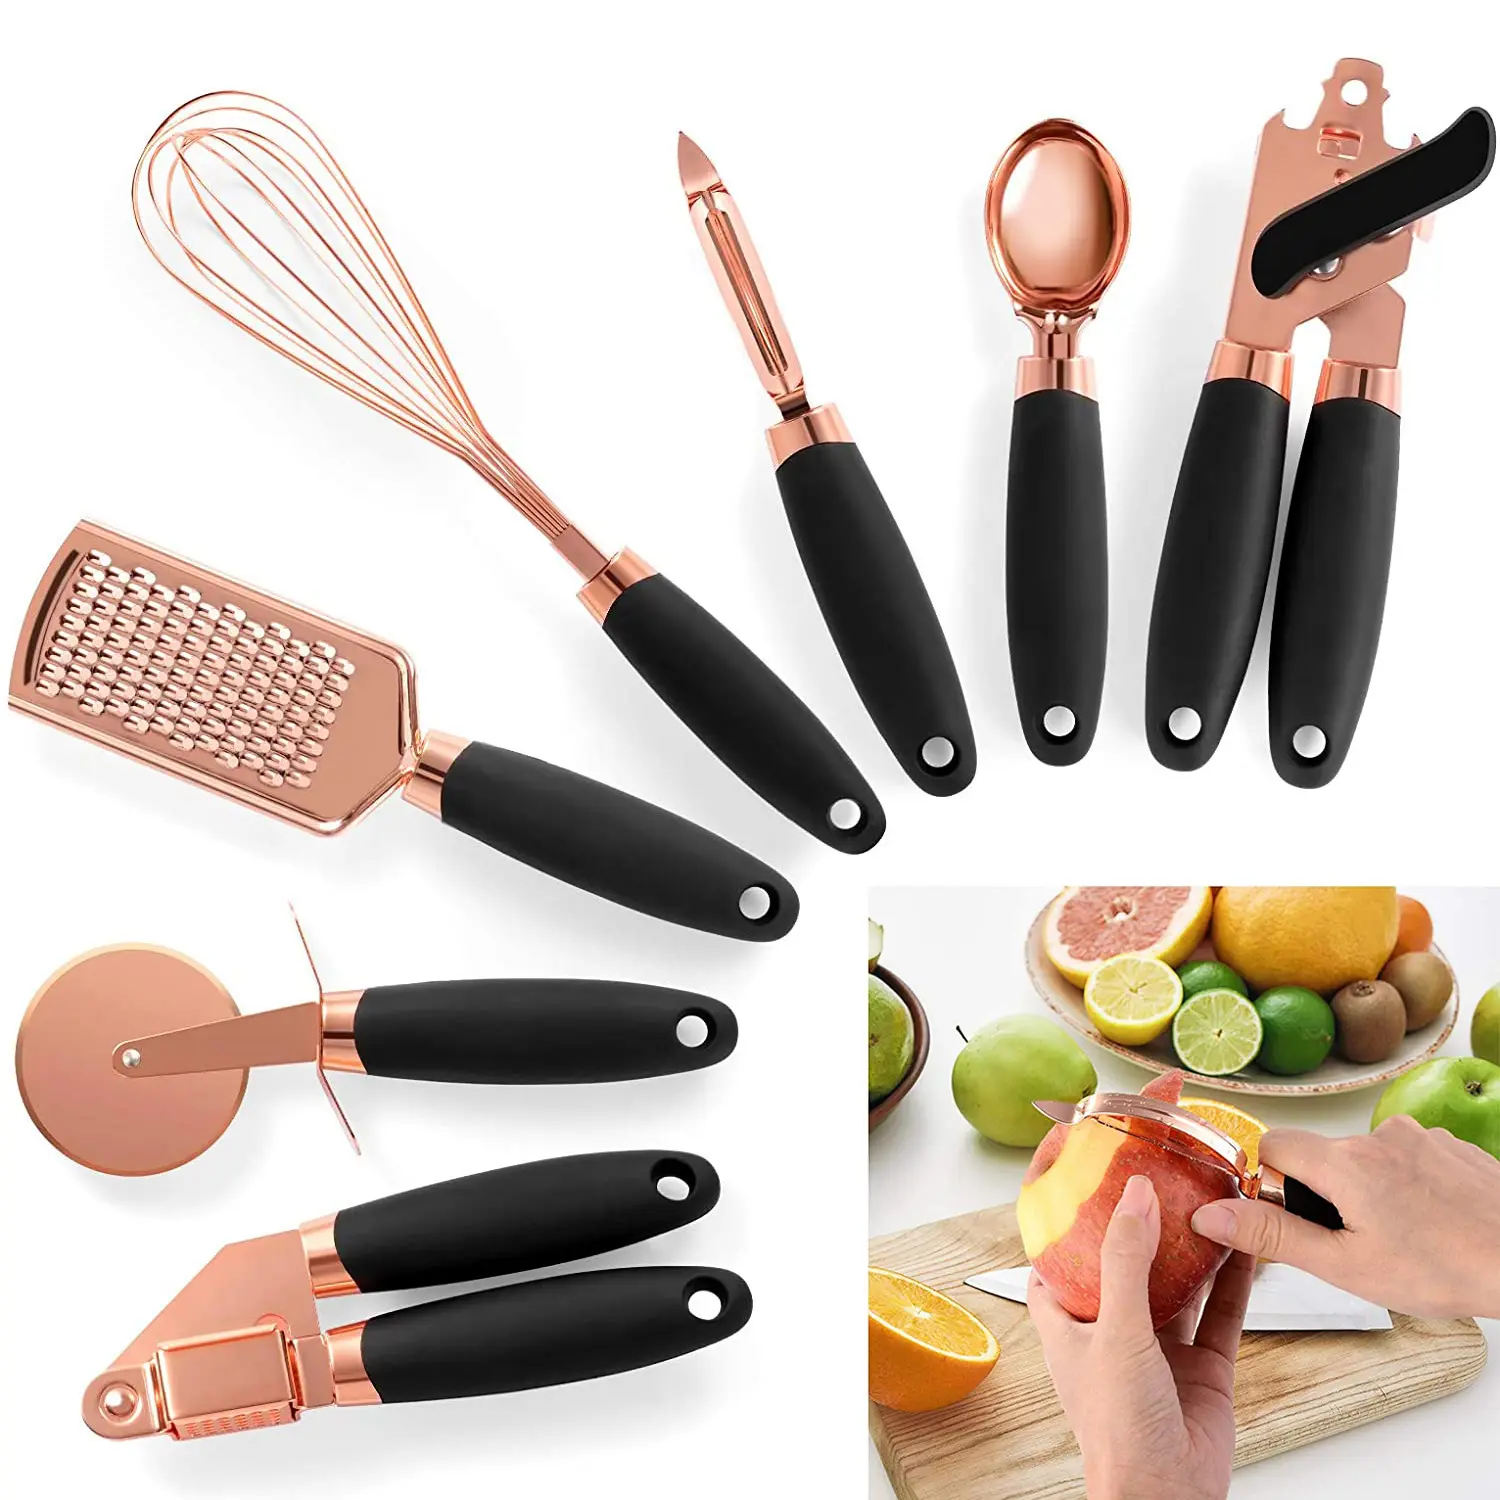 Commercio all'ingrosso della fabbrica oro rosa 7 pezzi gadget da cucina Set di utensili da cucina in acciaio inox elettrodomestico da cucina con manico in plastica